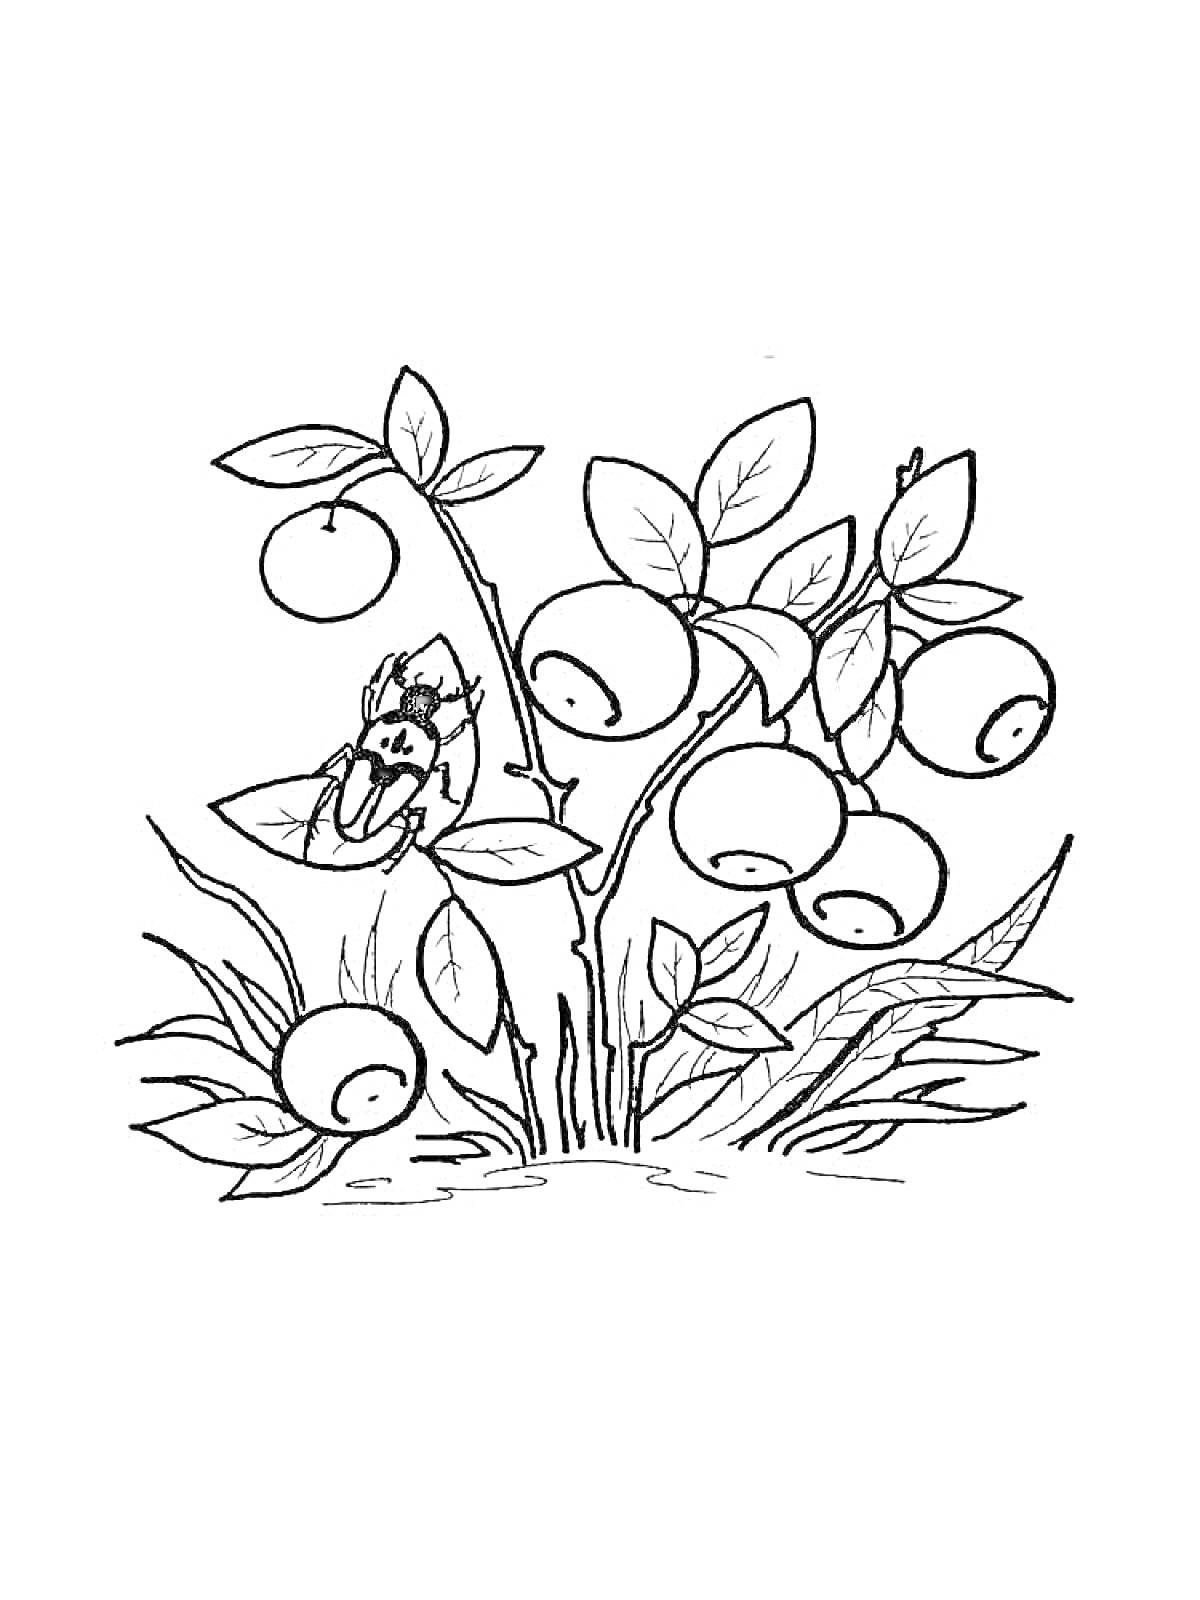 Раскраска Черника с листьями, ягодами и жуком